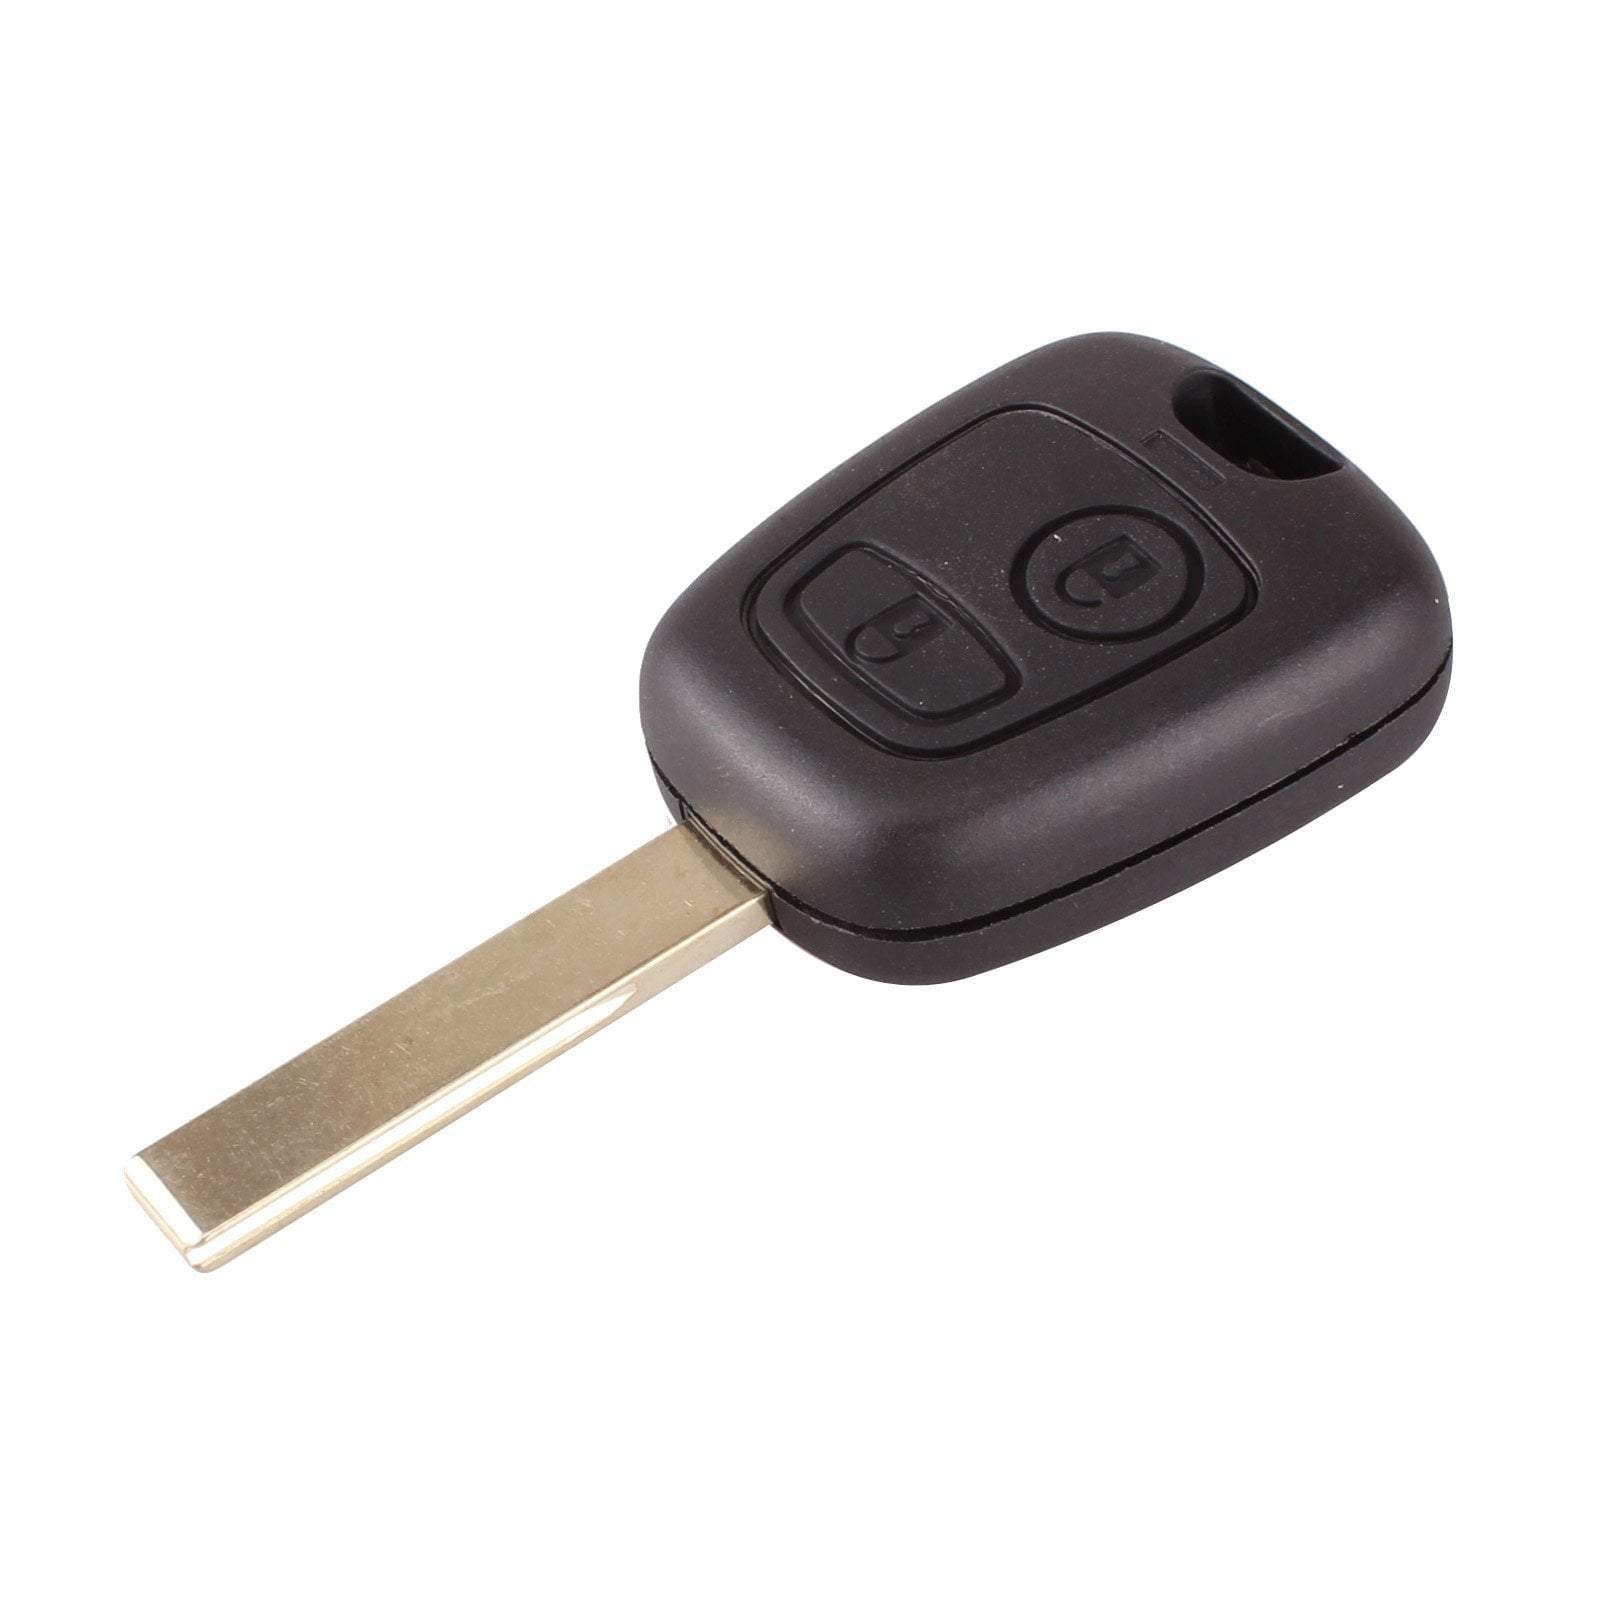 Fekete színű, 2 gombos Peugeot kulcs, kulcsház HU83 kulcsszárral.